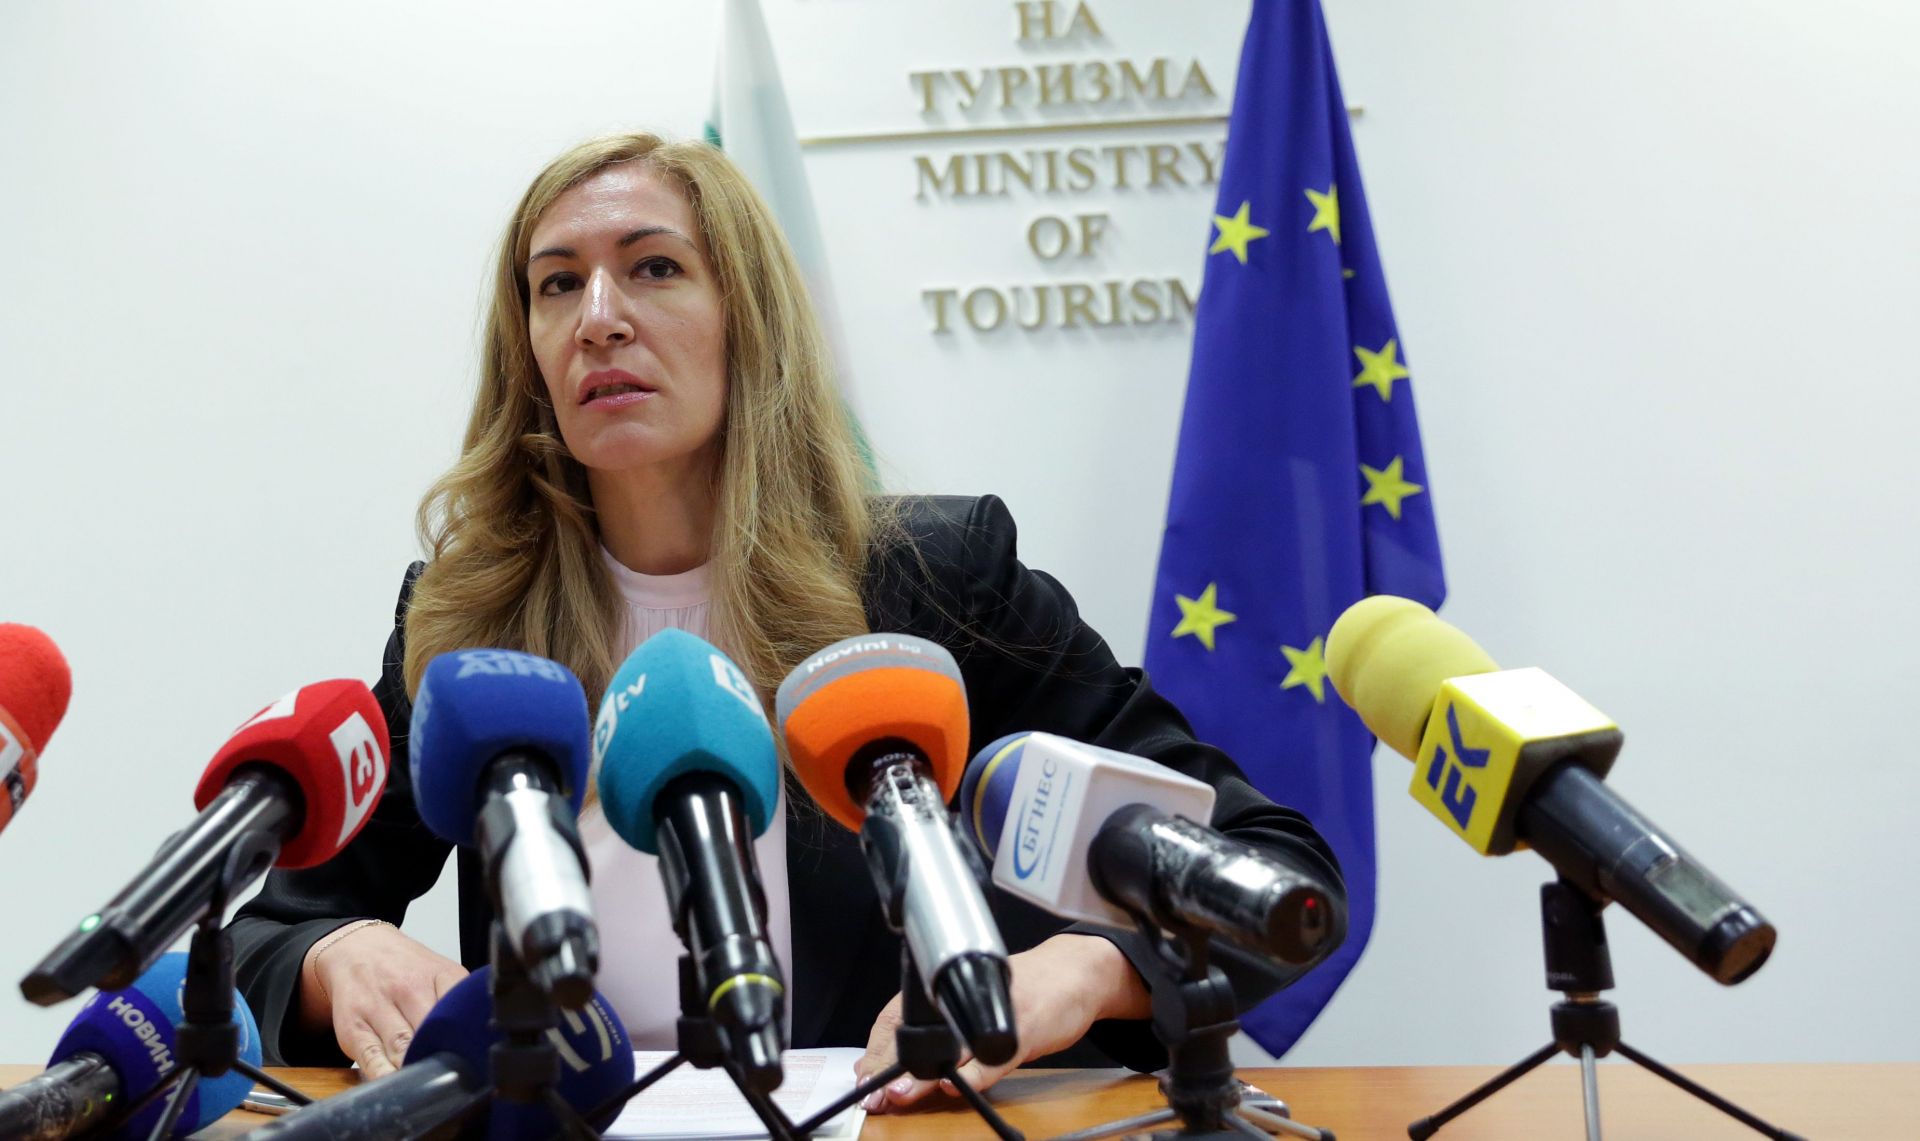 Обсъждат законодателни мерки, с които да бъде компенсиран туристическият бранш, каза министър Ангелкова